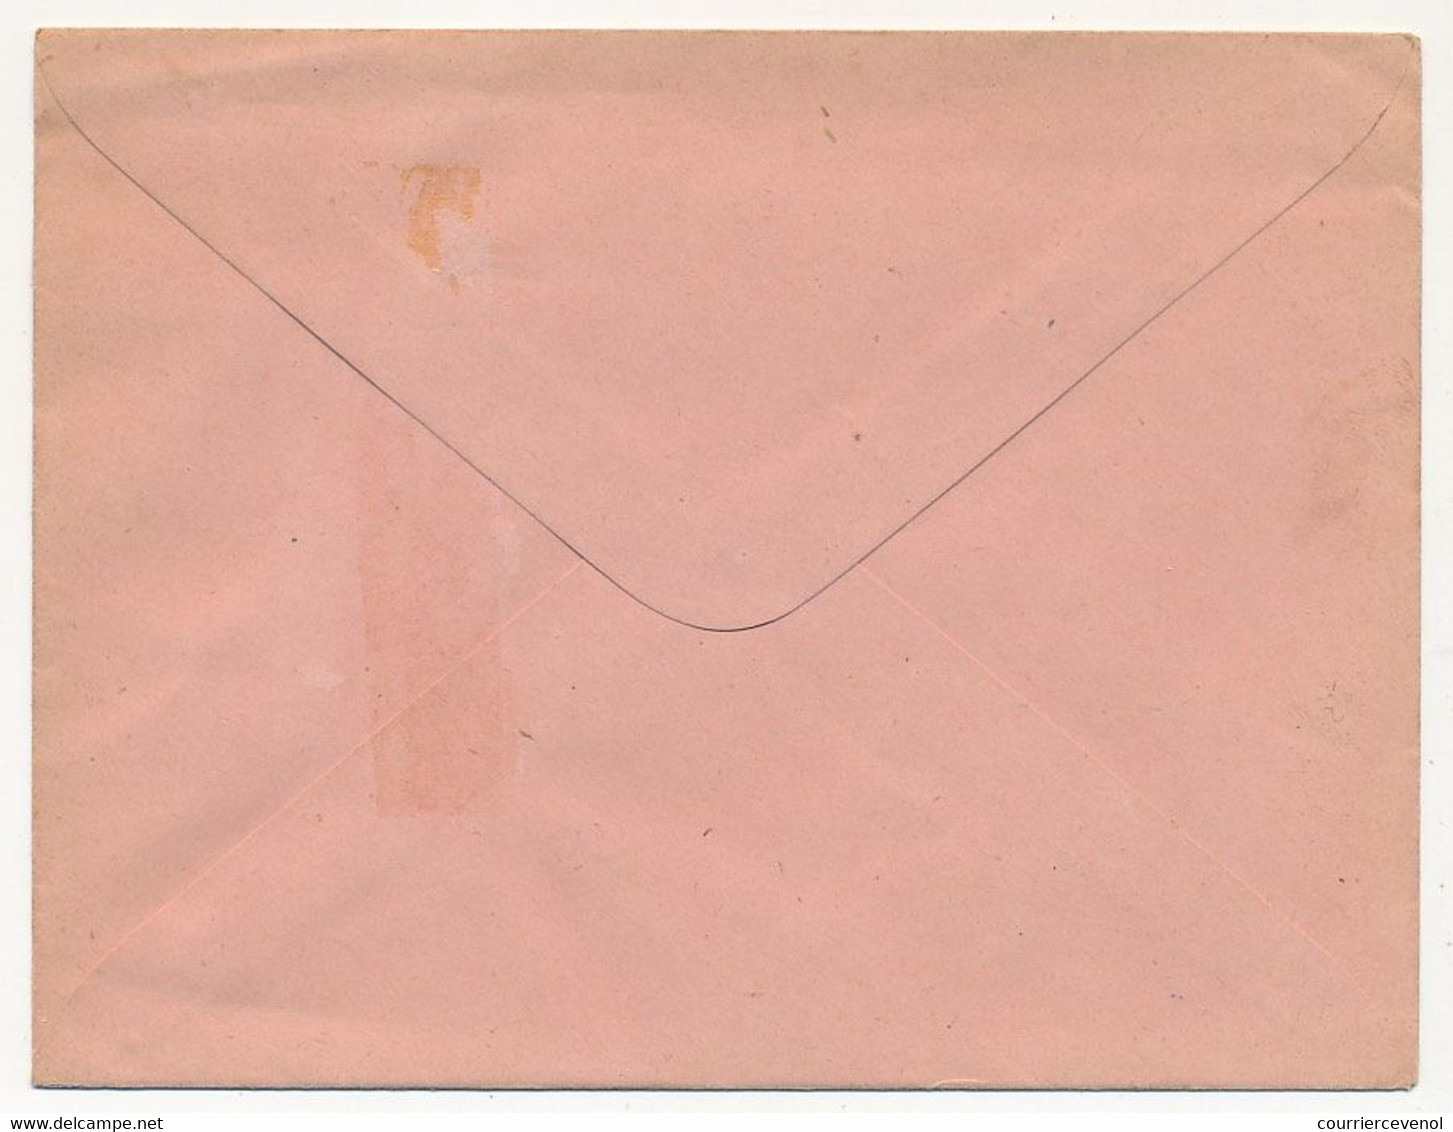 COTE D'IVOIRE - Entier Postal (enveloppe) 25c Groupe - Ref EN 7 - 147 X 112 Mm - Nuovi